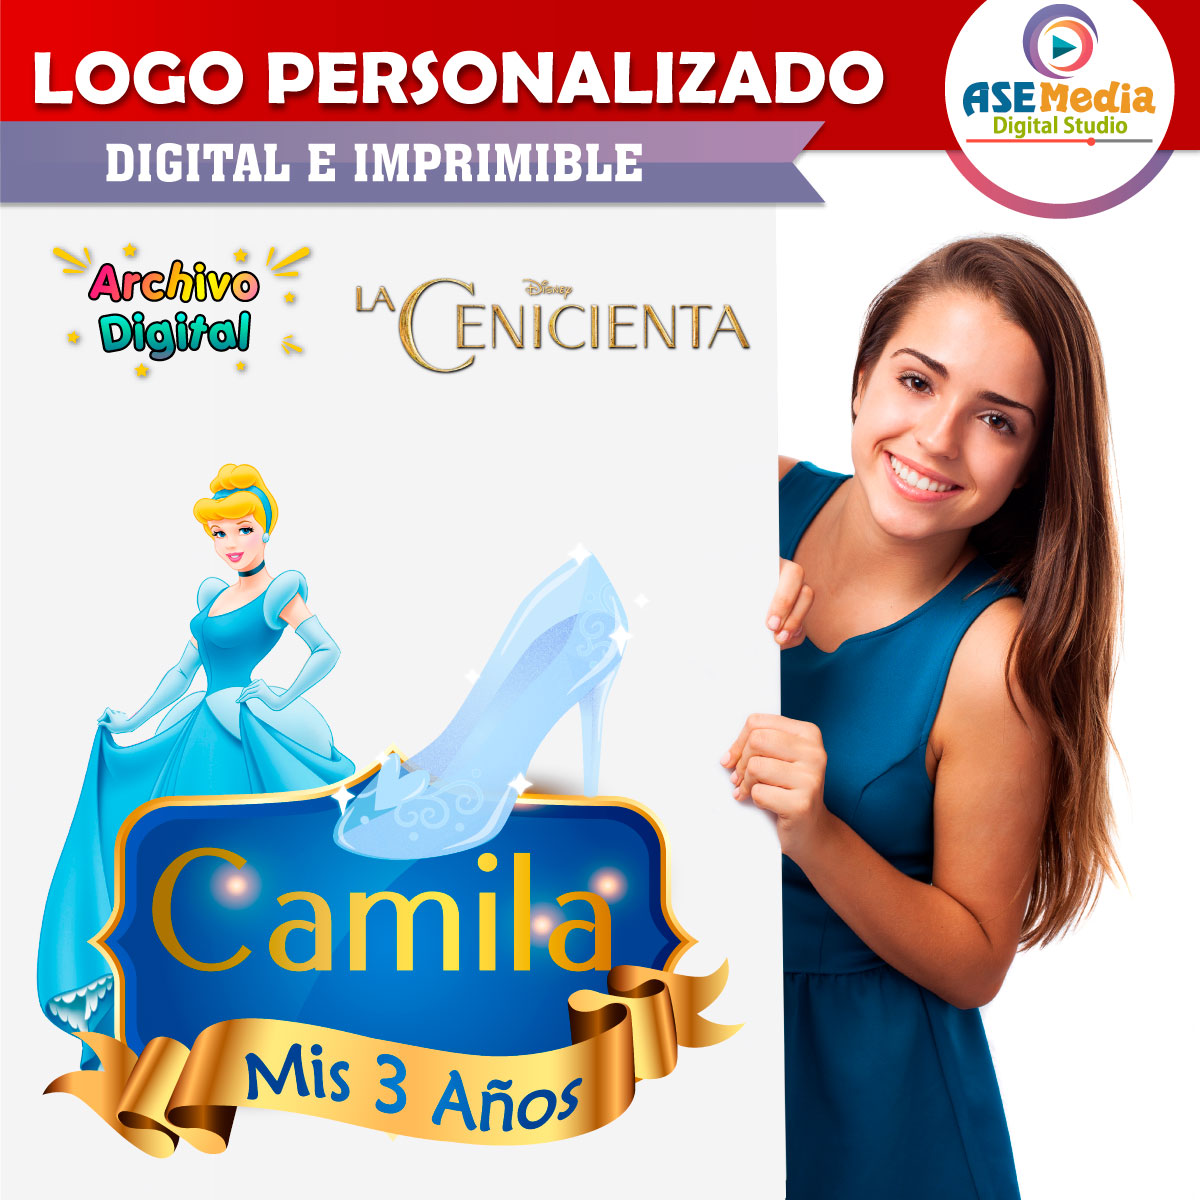 La Cenicienta Logo Personalizado con Nombre – AseMedia Digital Studio